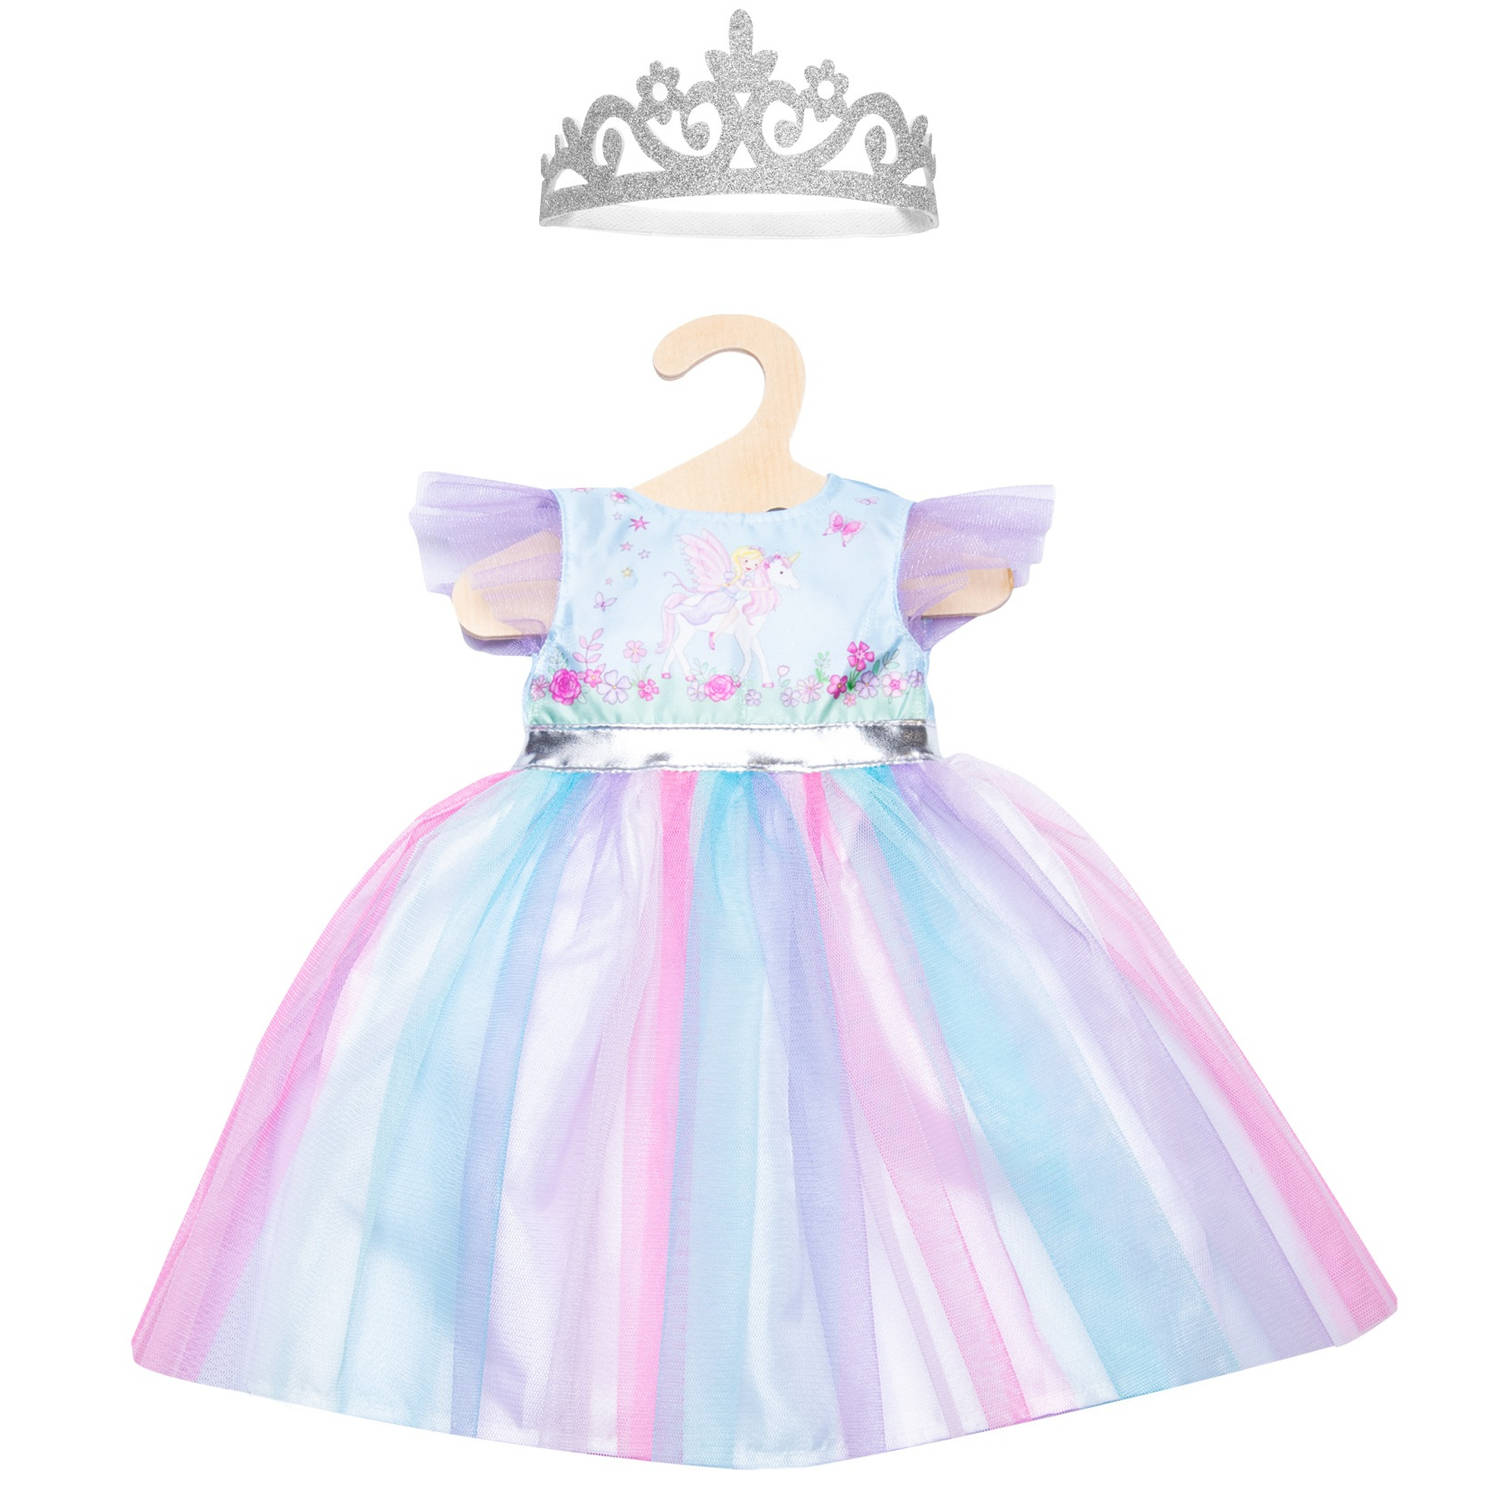 Heless babypoppenkleding prinsessenjurk 35-45 cm 2-delig